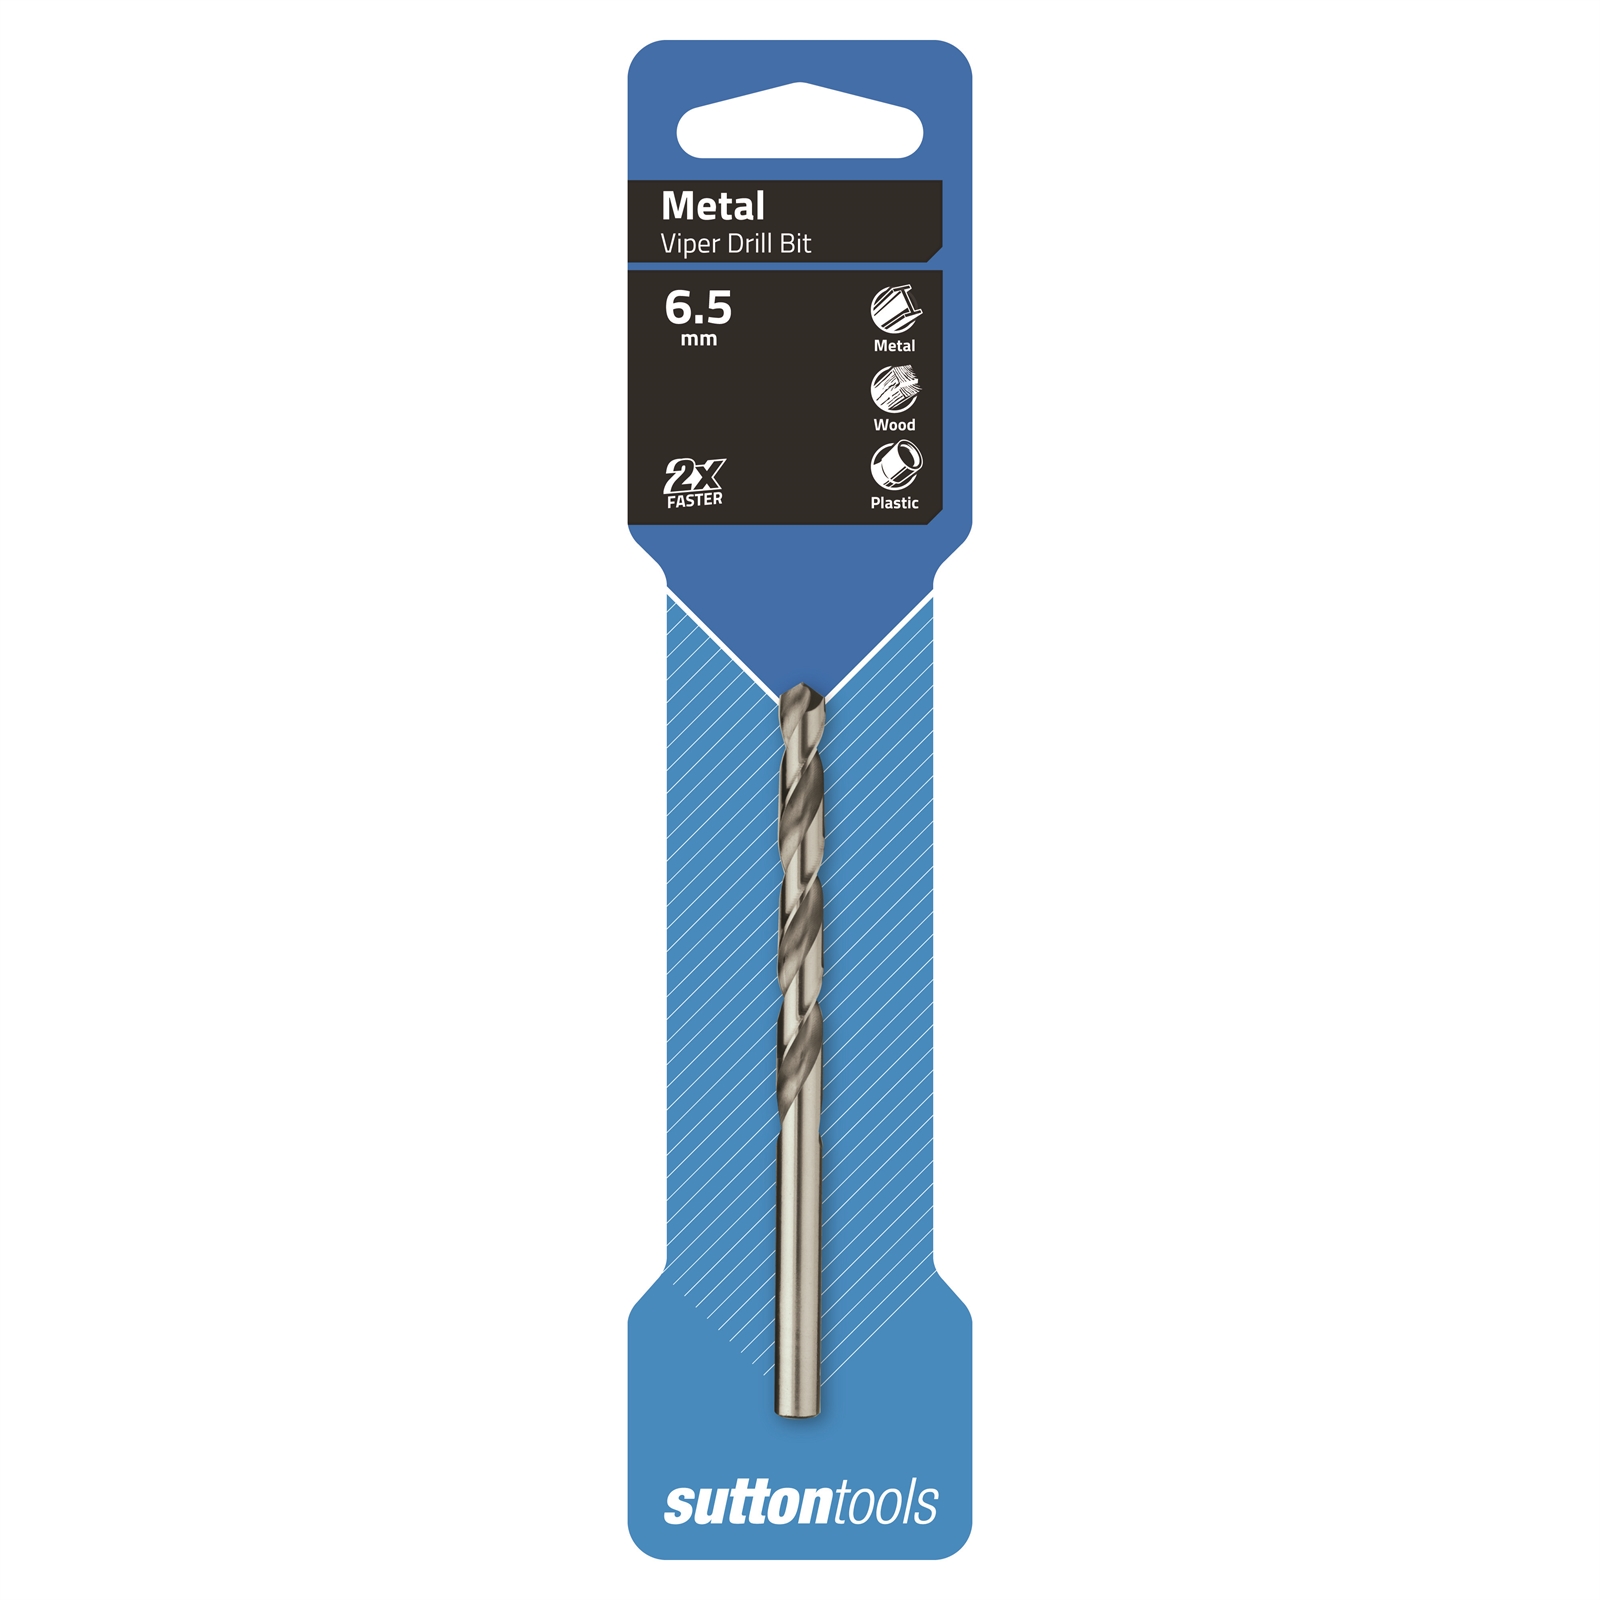 Sutton Tools 6.5mm HSS Metric Viper Drill Bit